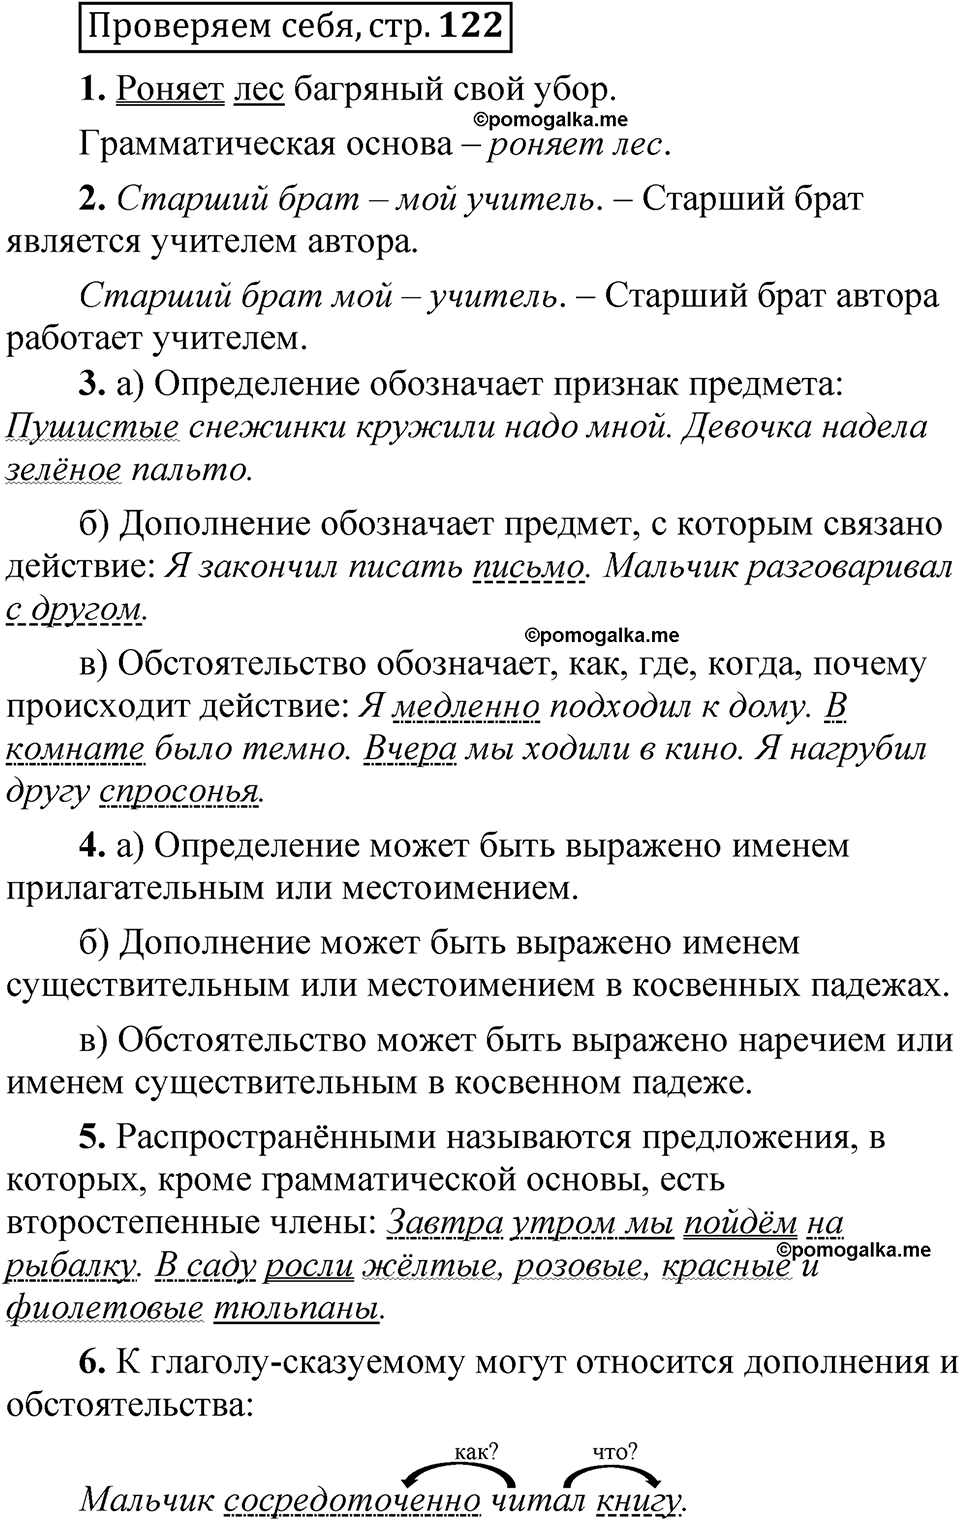 страница 121 Проверяем себя русский язык 5 класс Быстрова, Кибирева 1 часть 2021 год